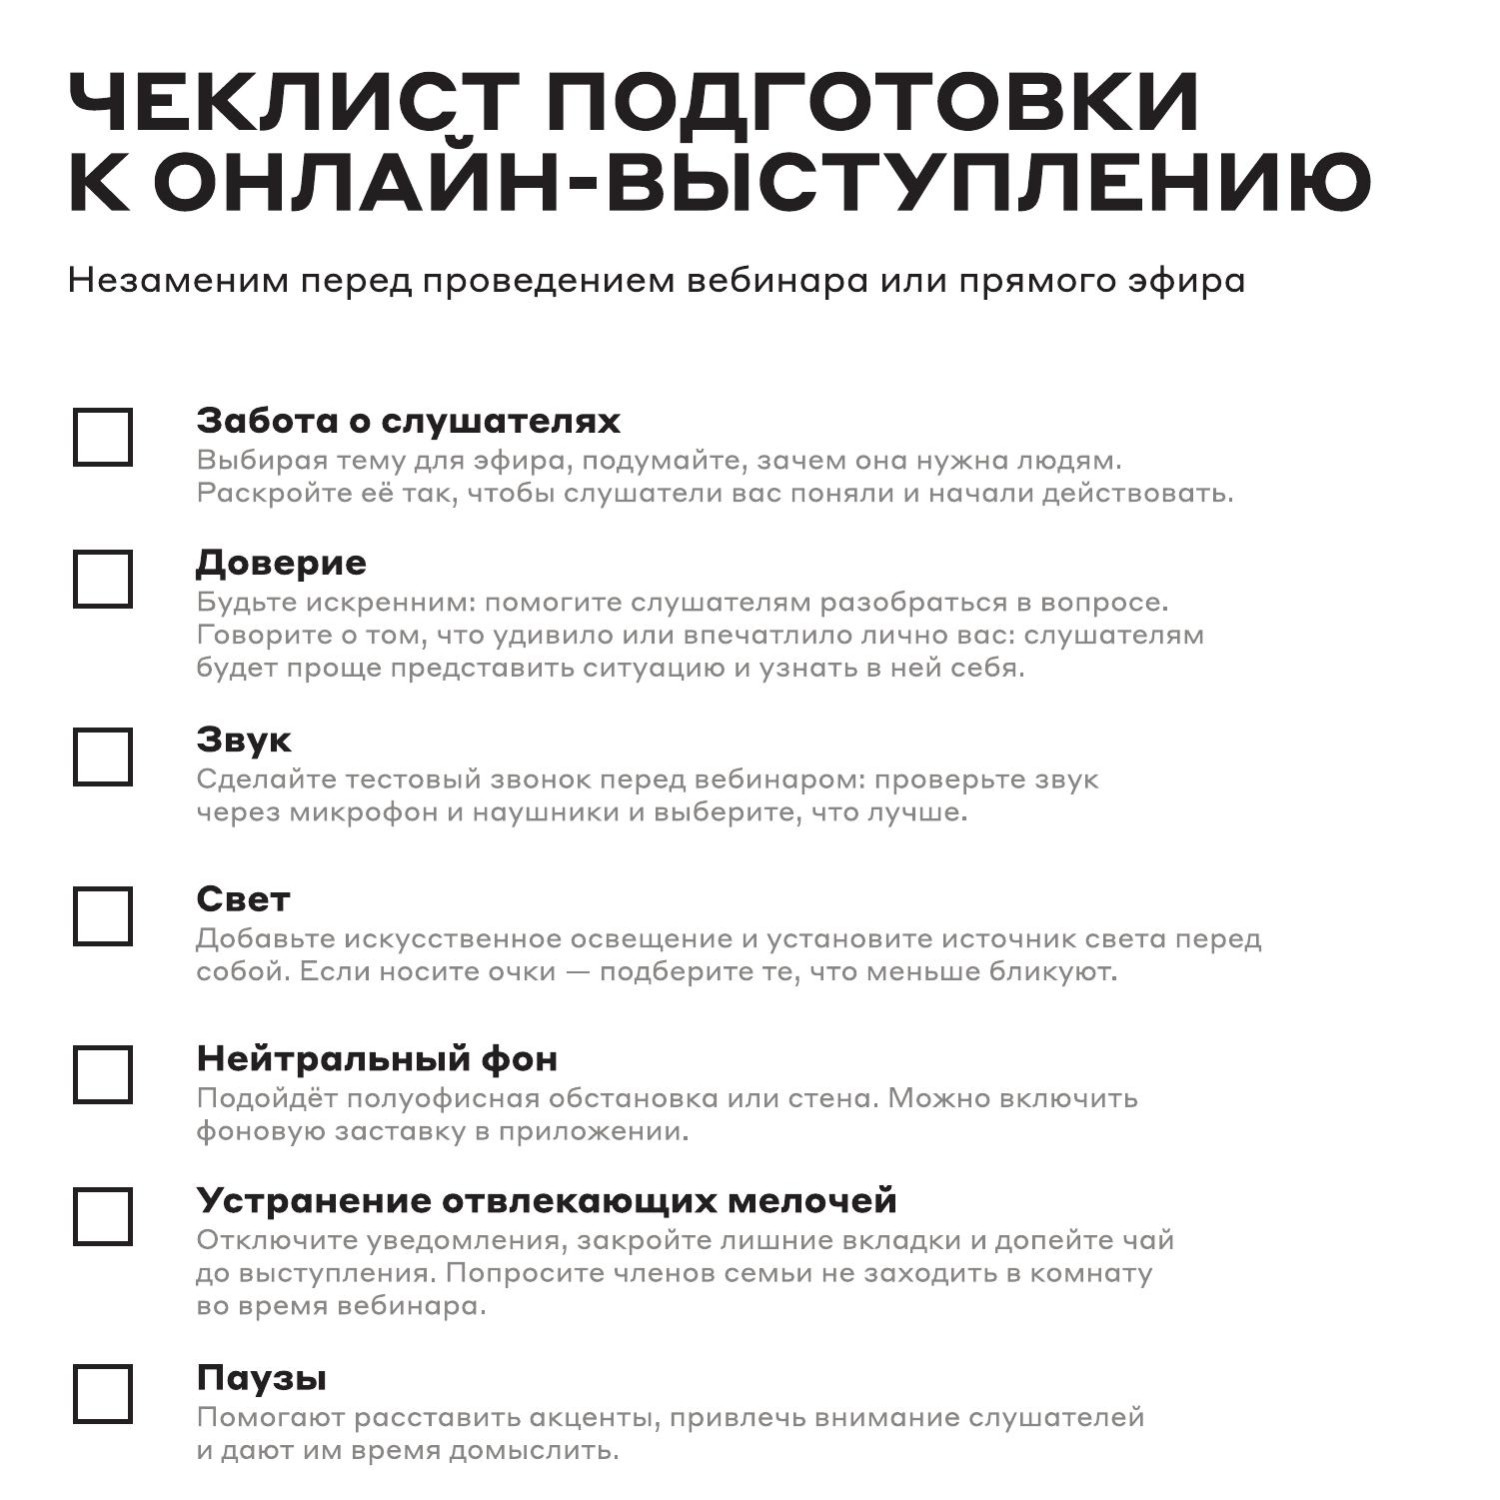 Online-presentation-checklist.pdf | DocDroid